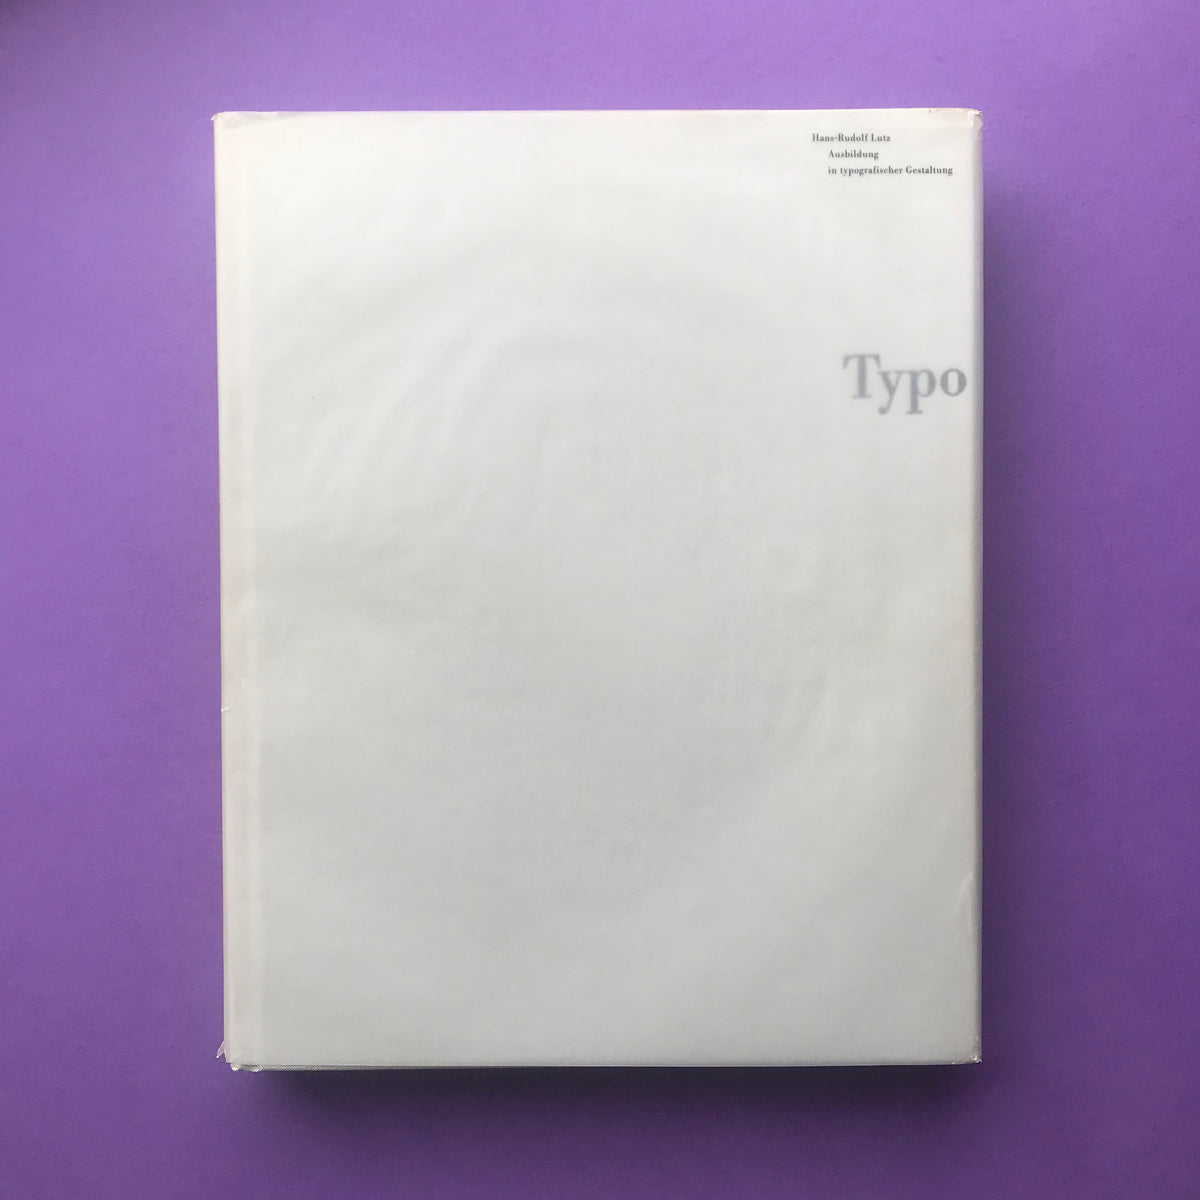 Typo - Ausbildung in typografischer Gestaltung (Hans-Rudolf Lutz 